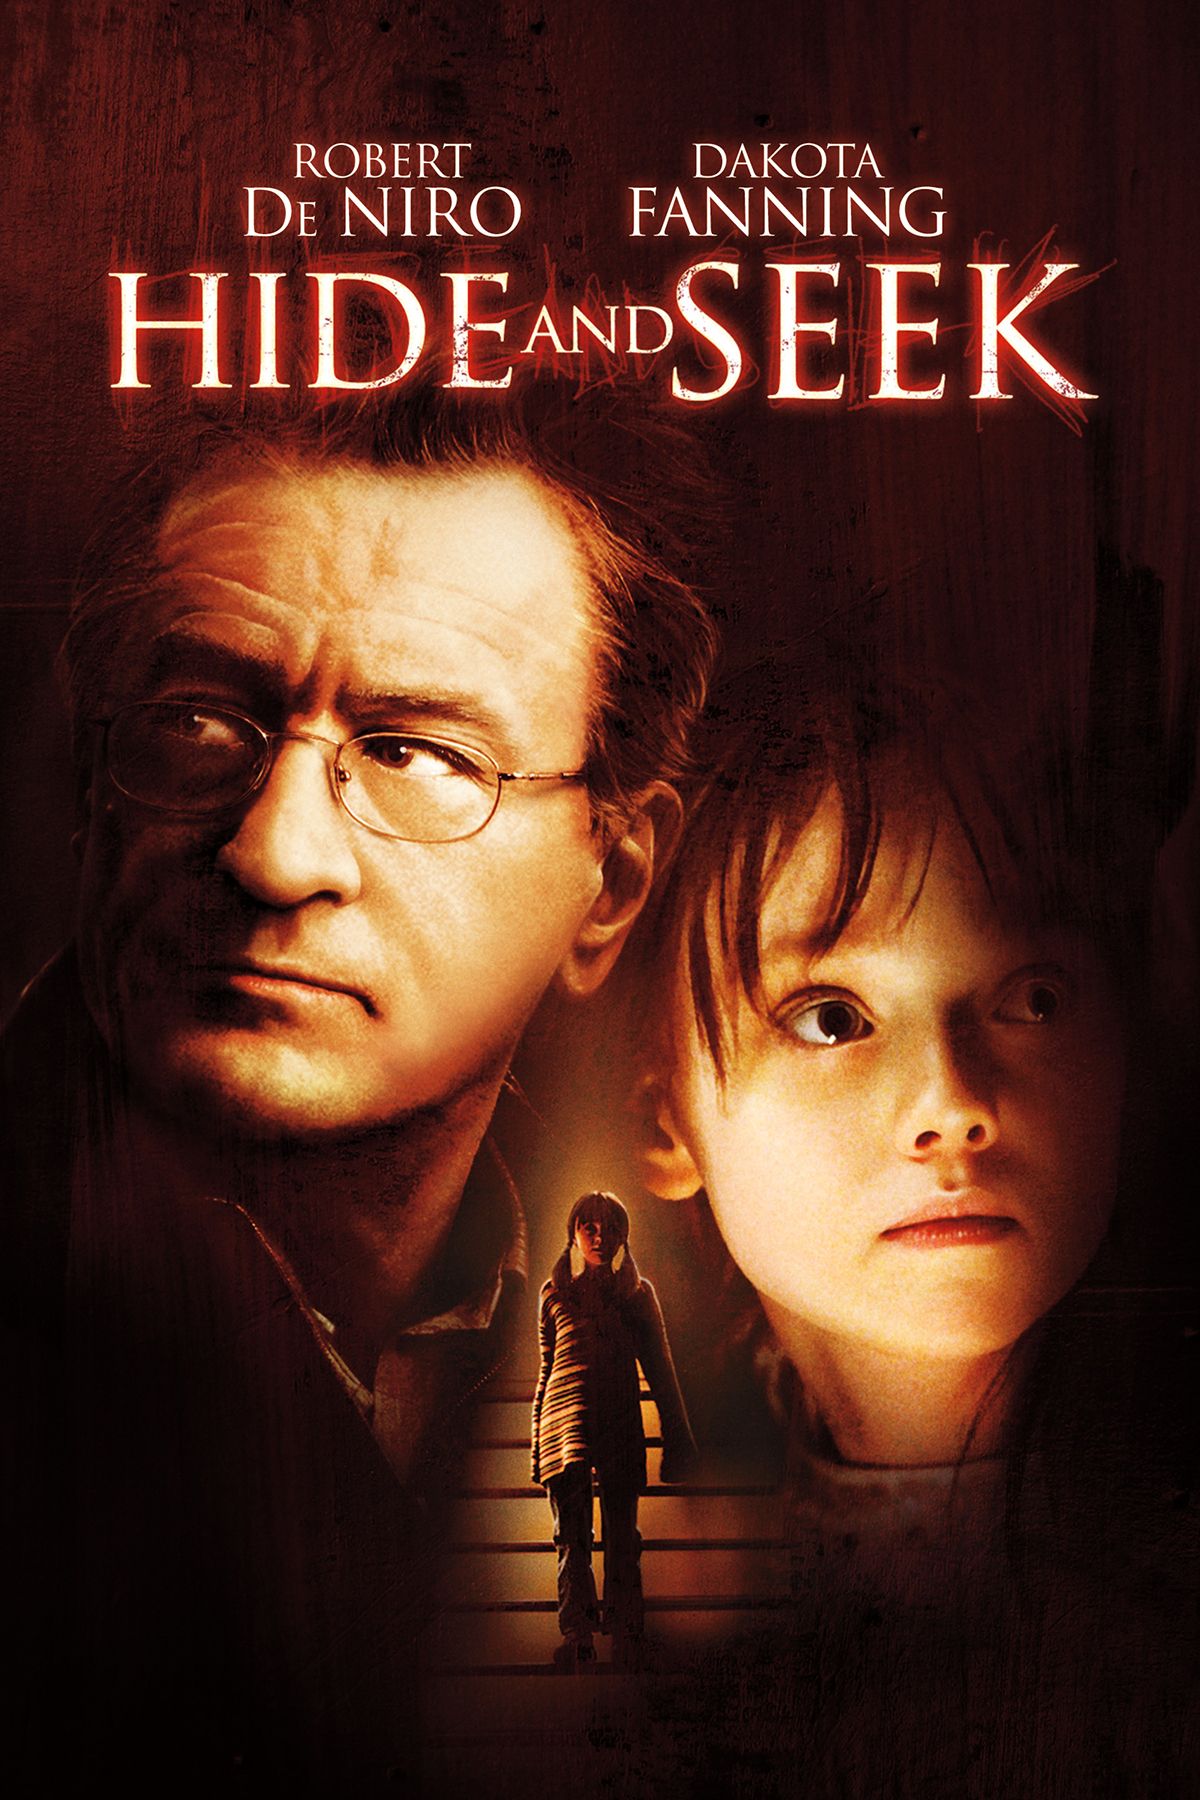 Hide and Seek, Full Movie